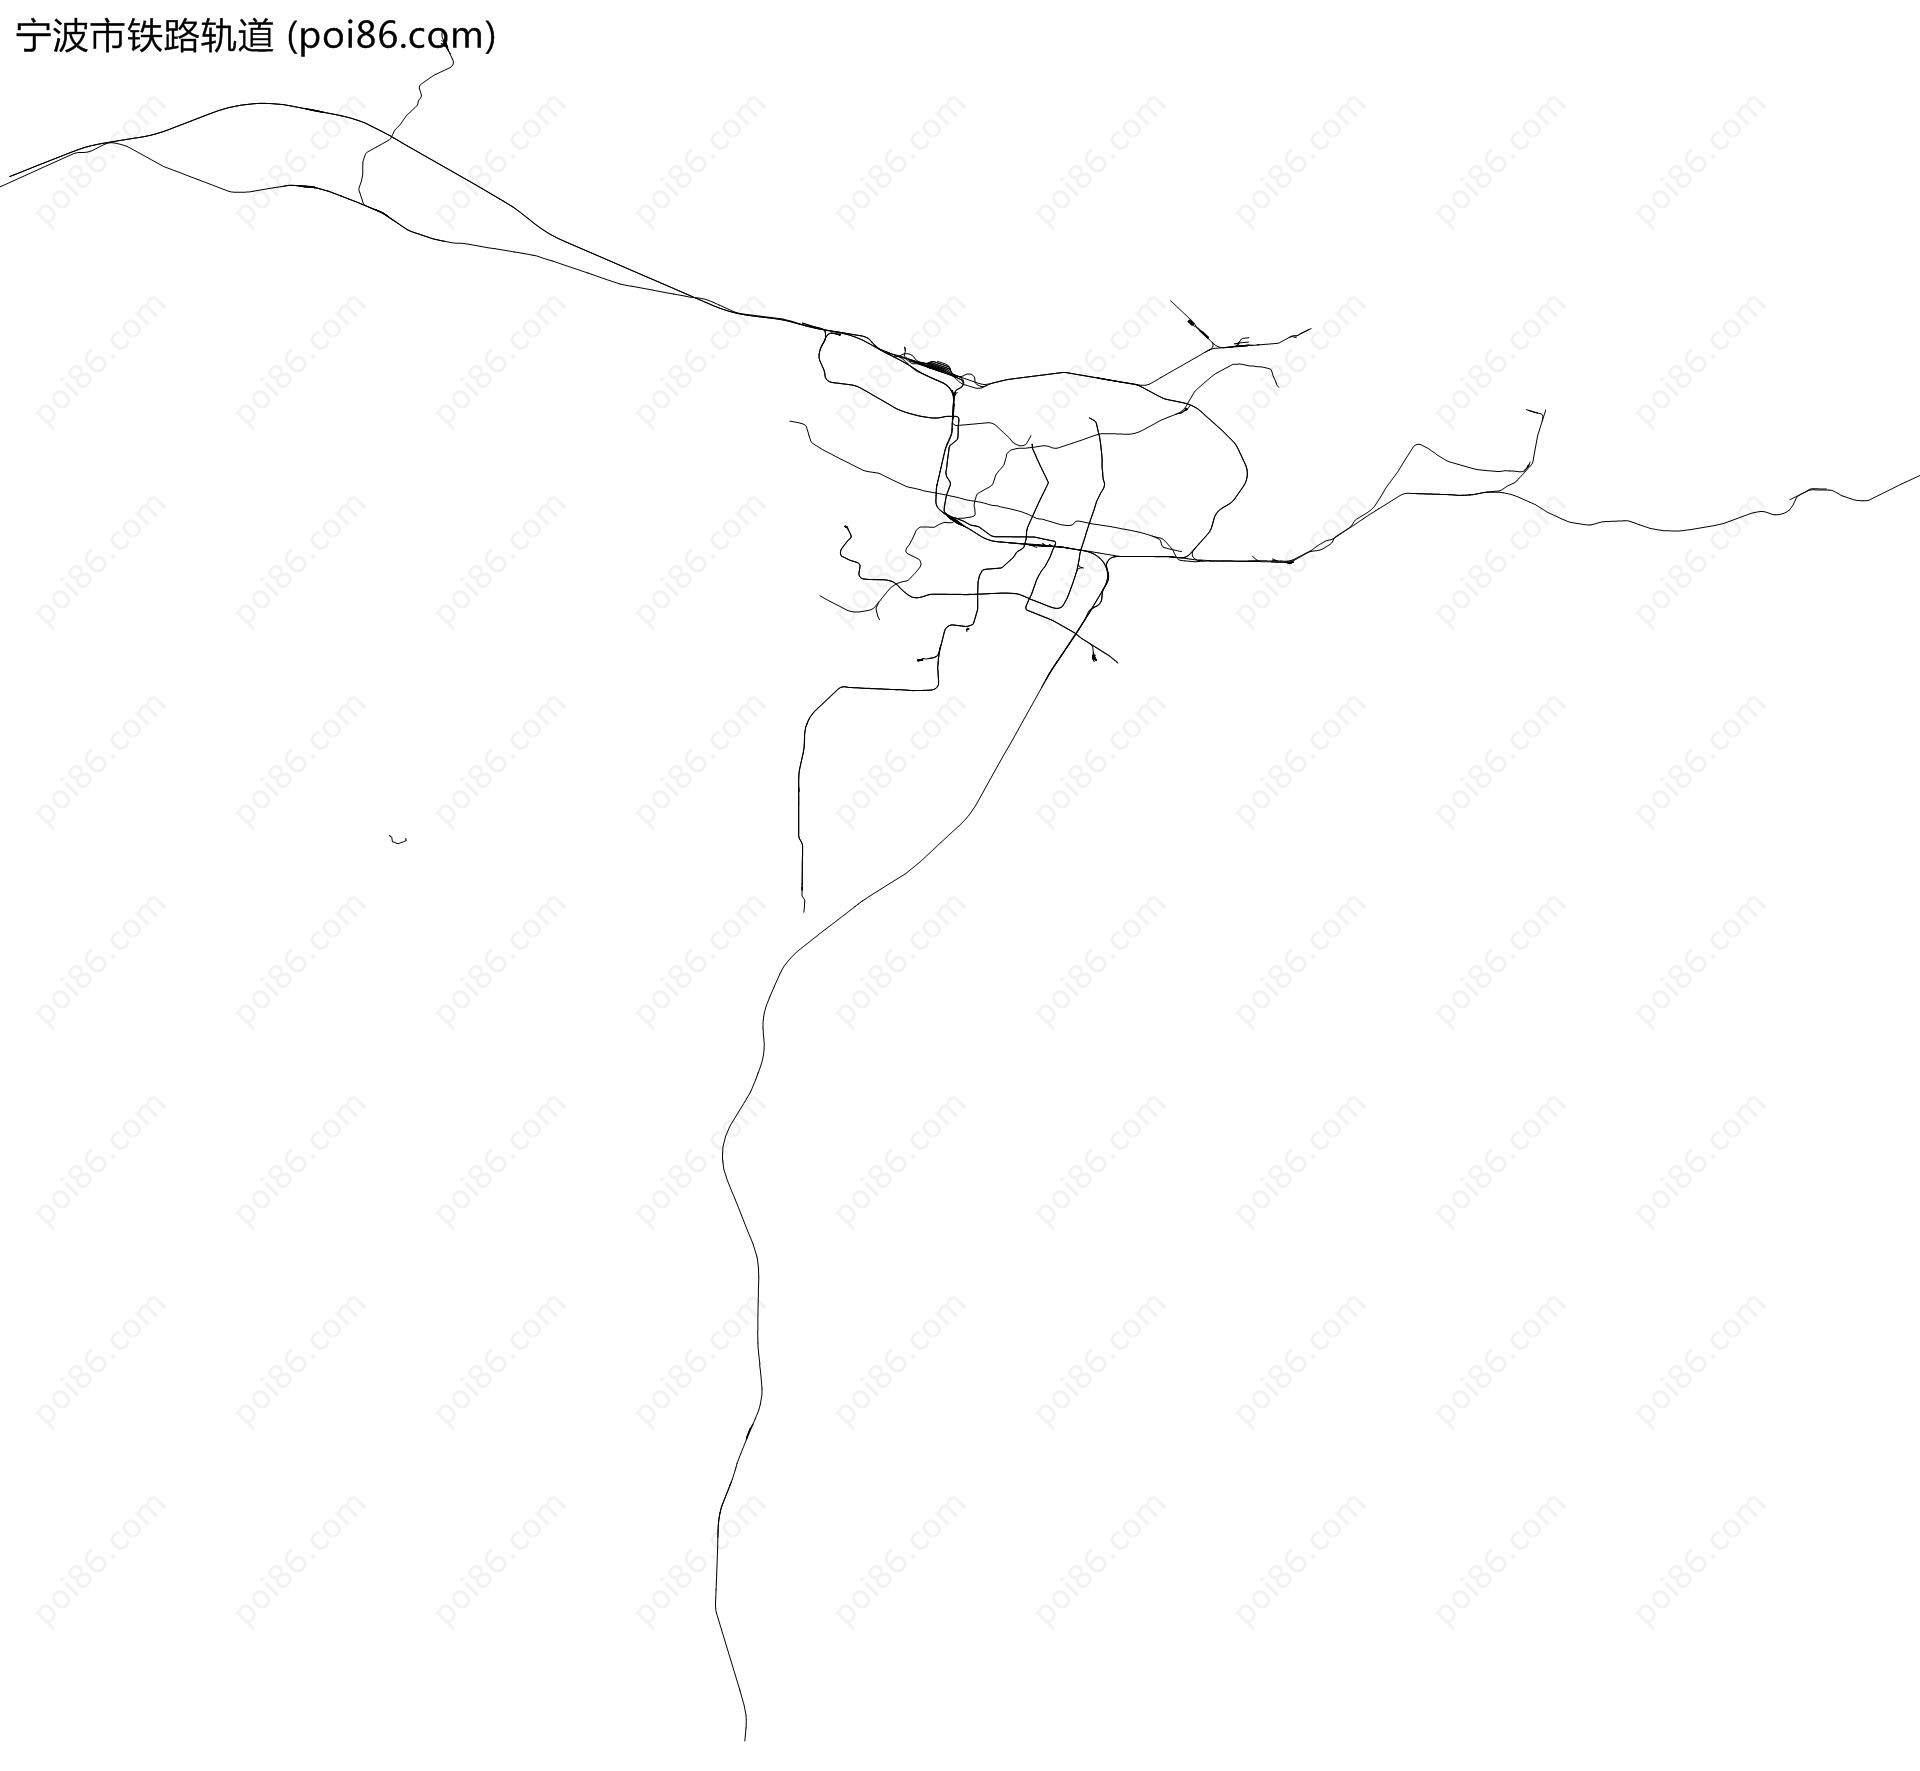 宁波市铁路轨道地图